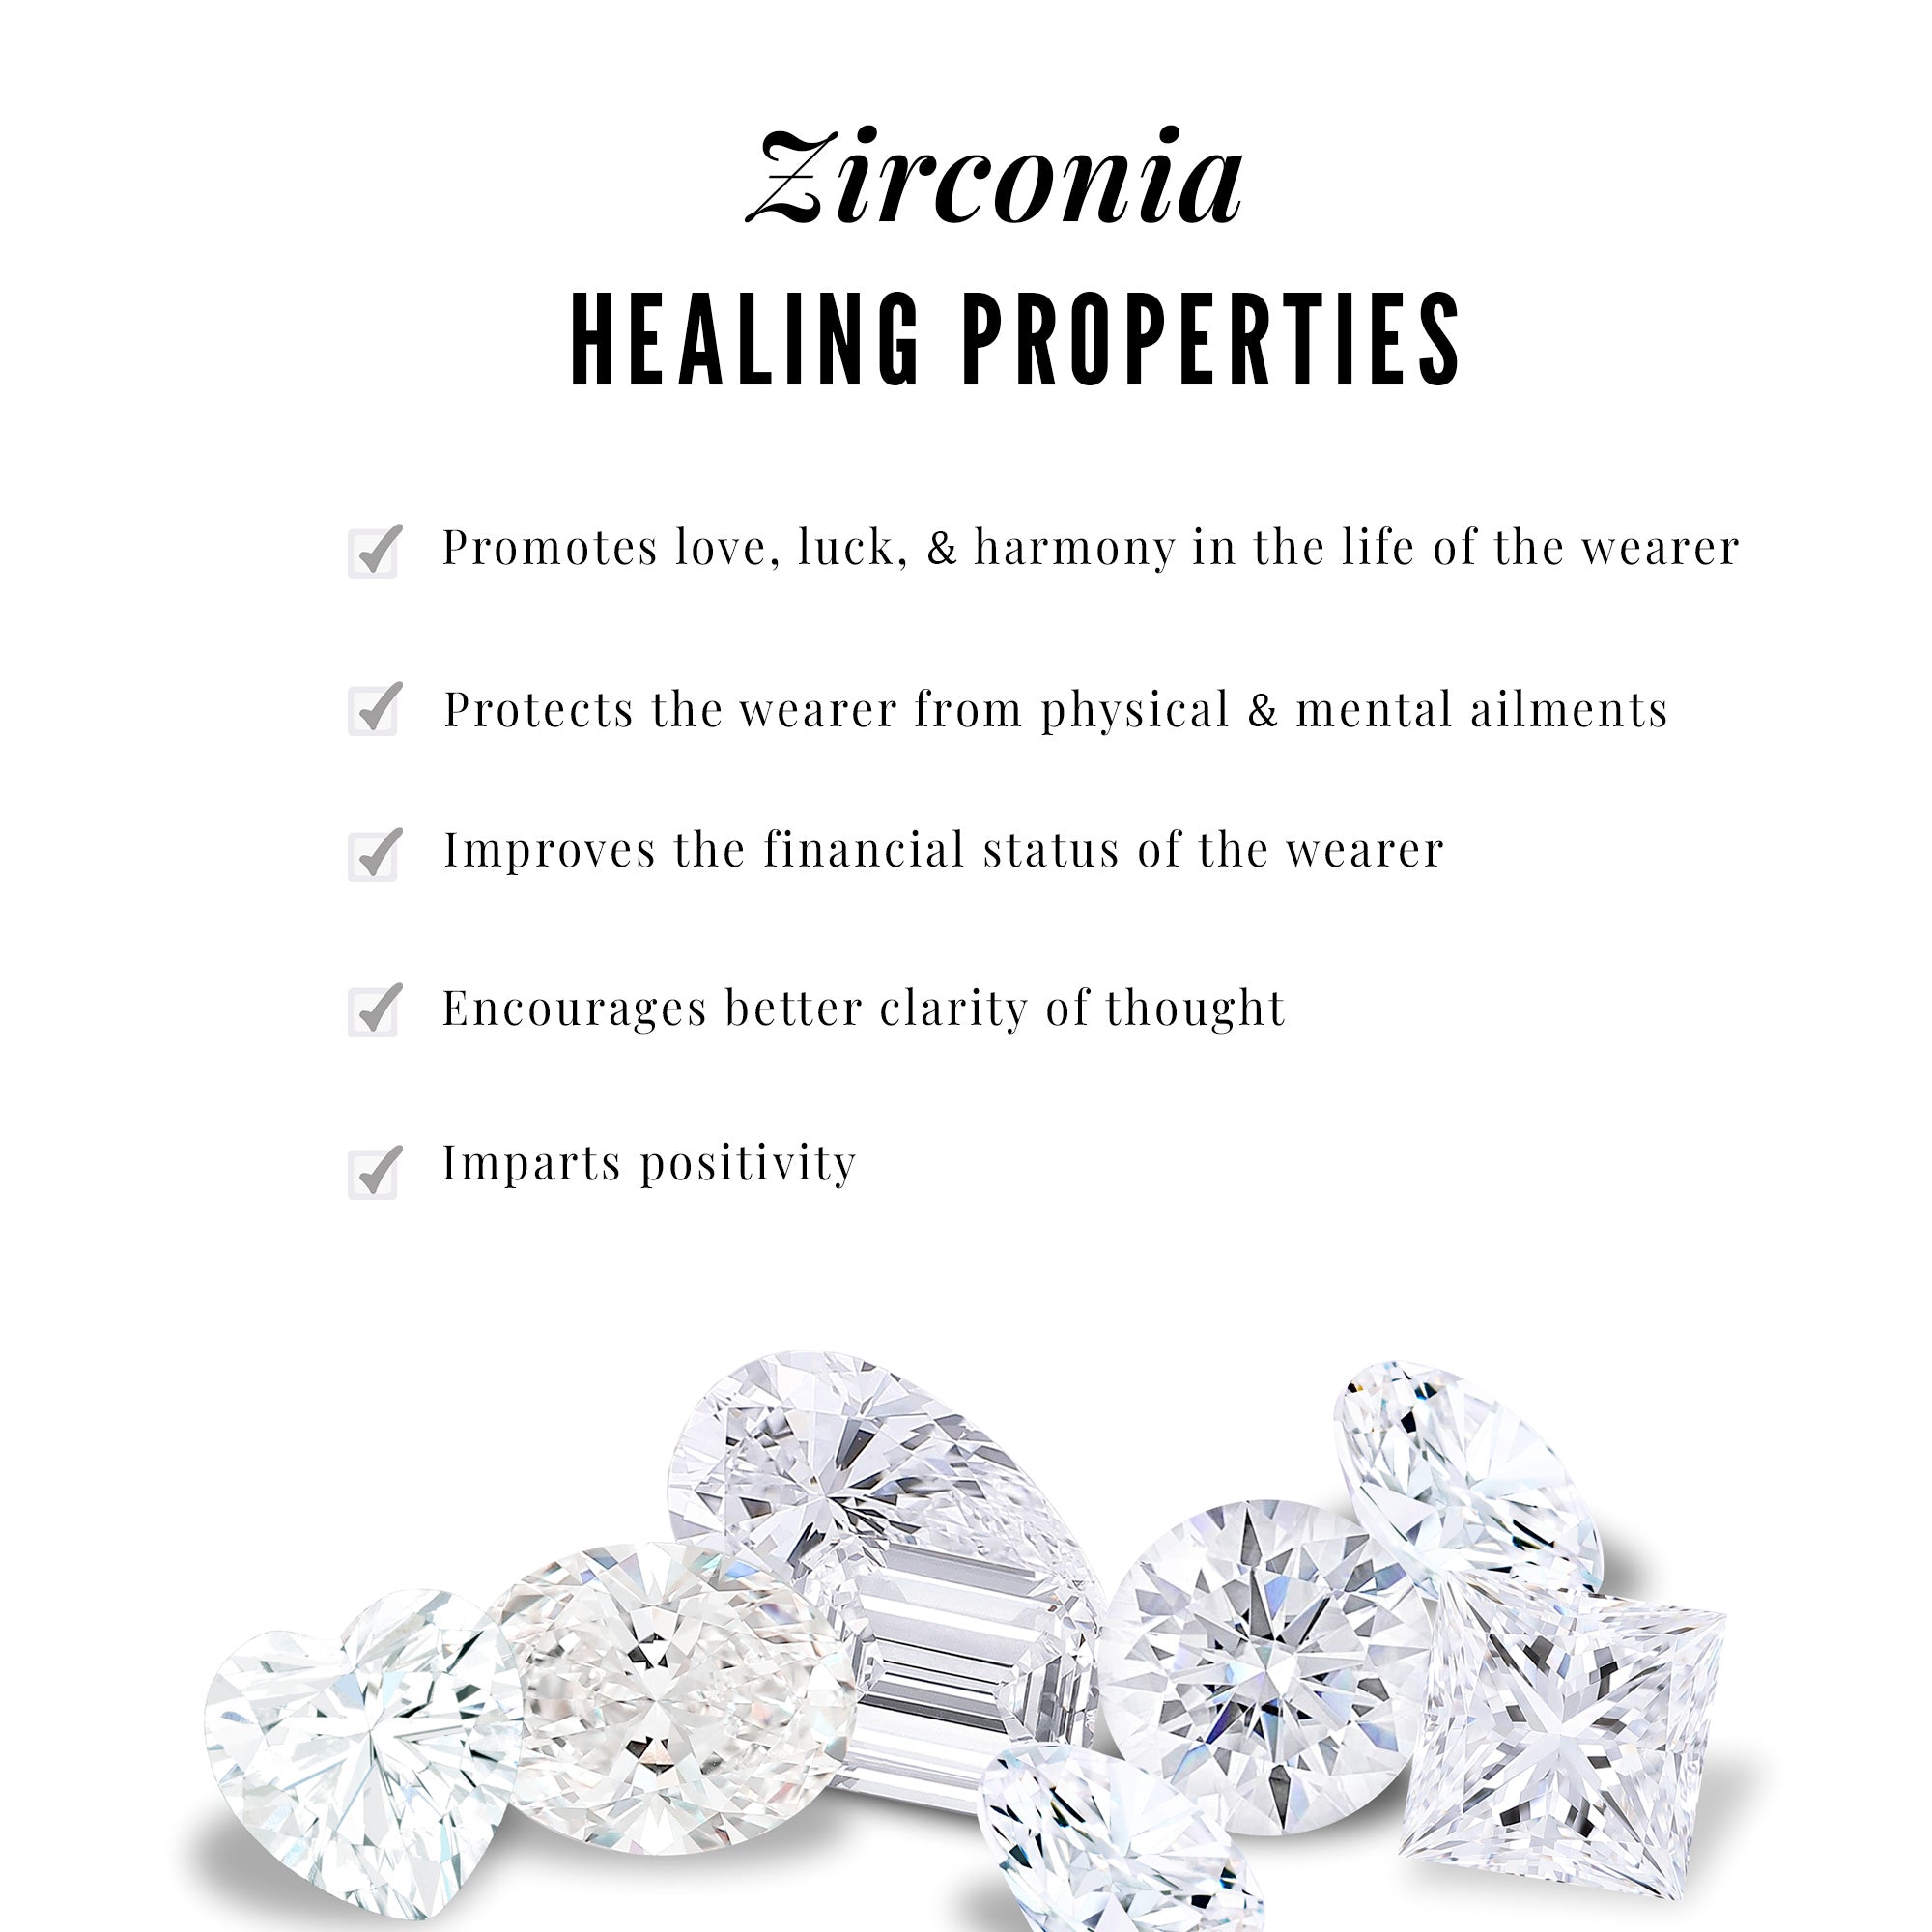 3 CT Bezel Set Round Zircon Minimal Drop Jewelry Set Zircon - ( AAAA ) - Quality - Rosec Jewels